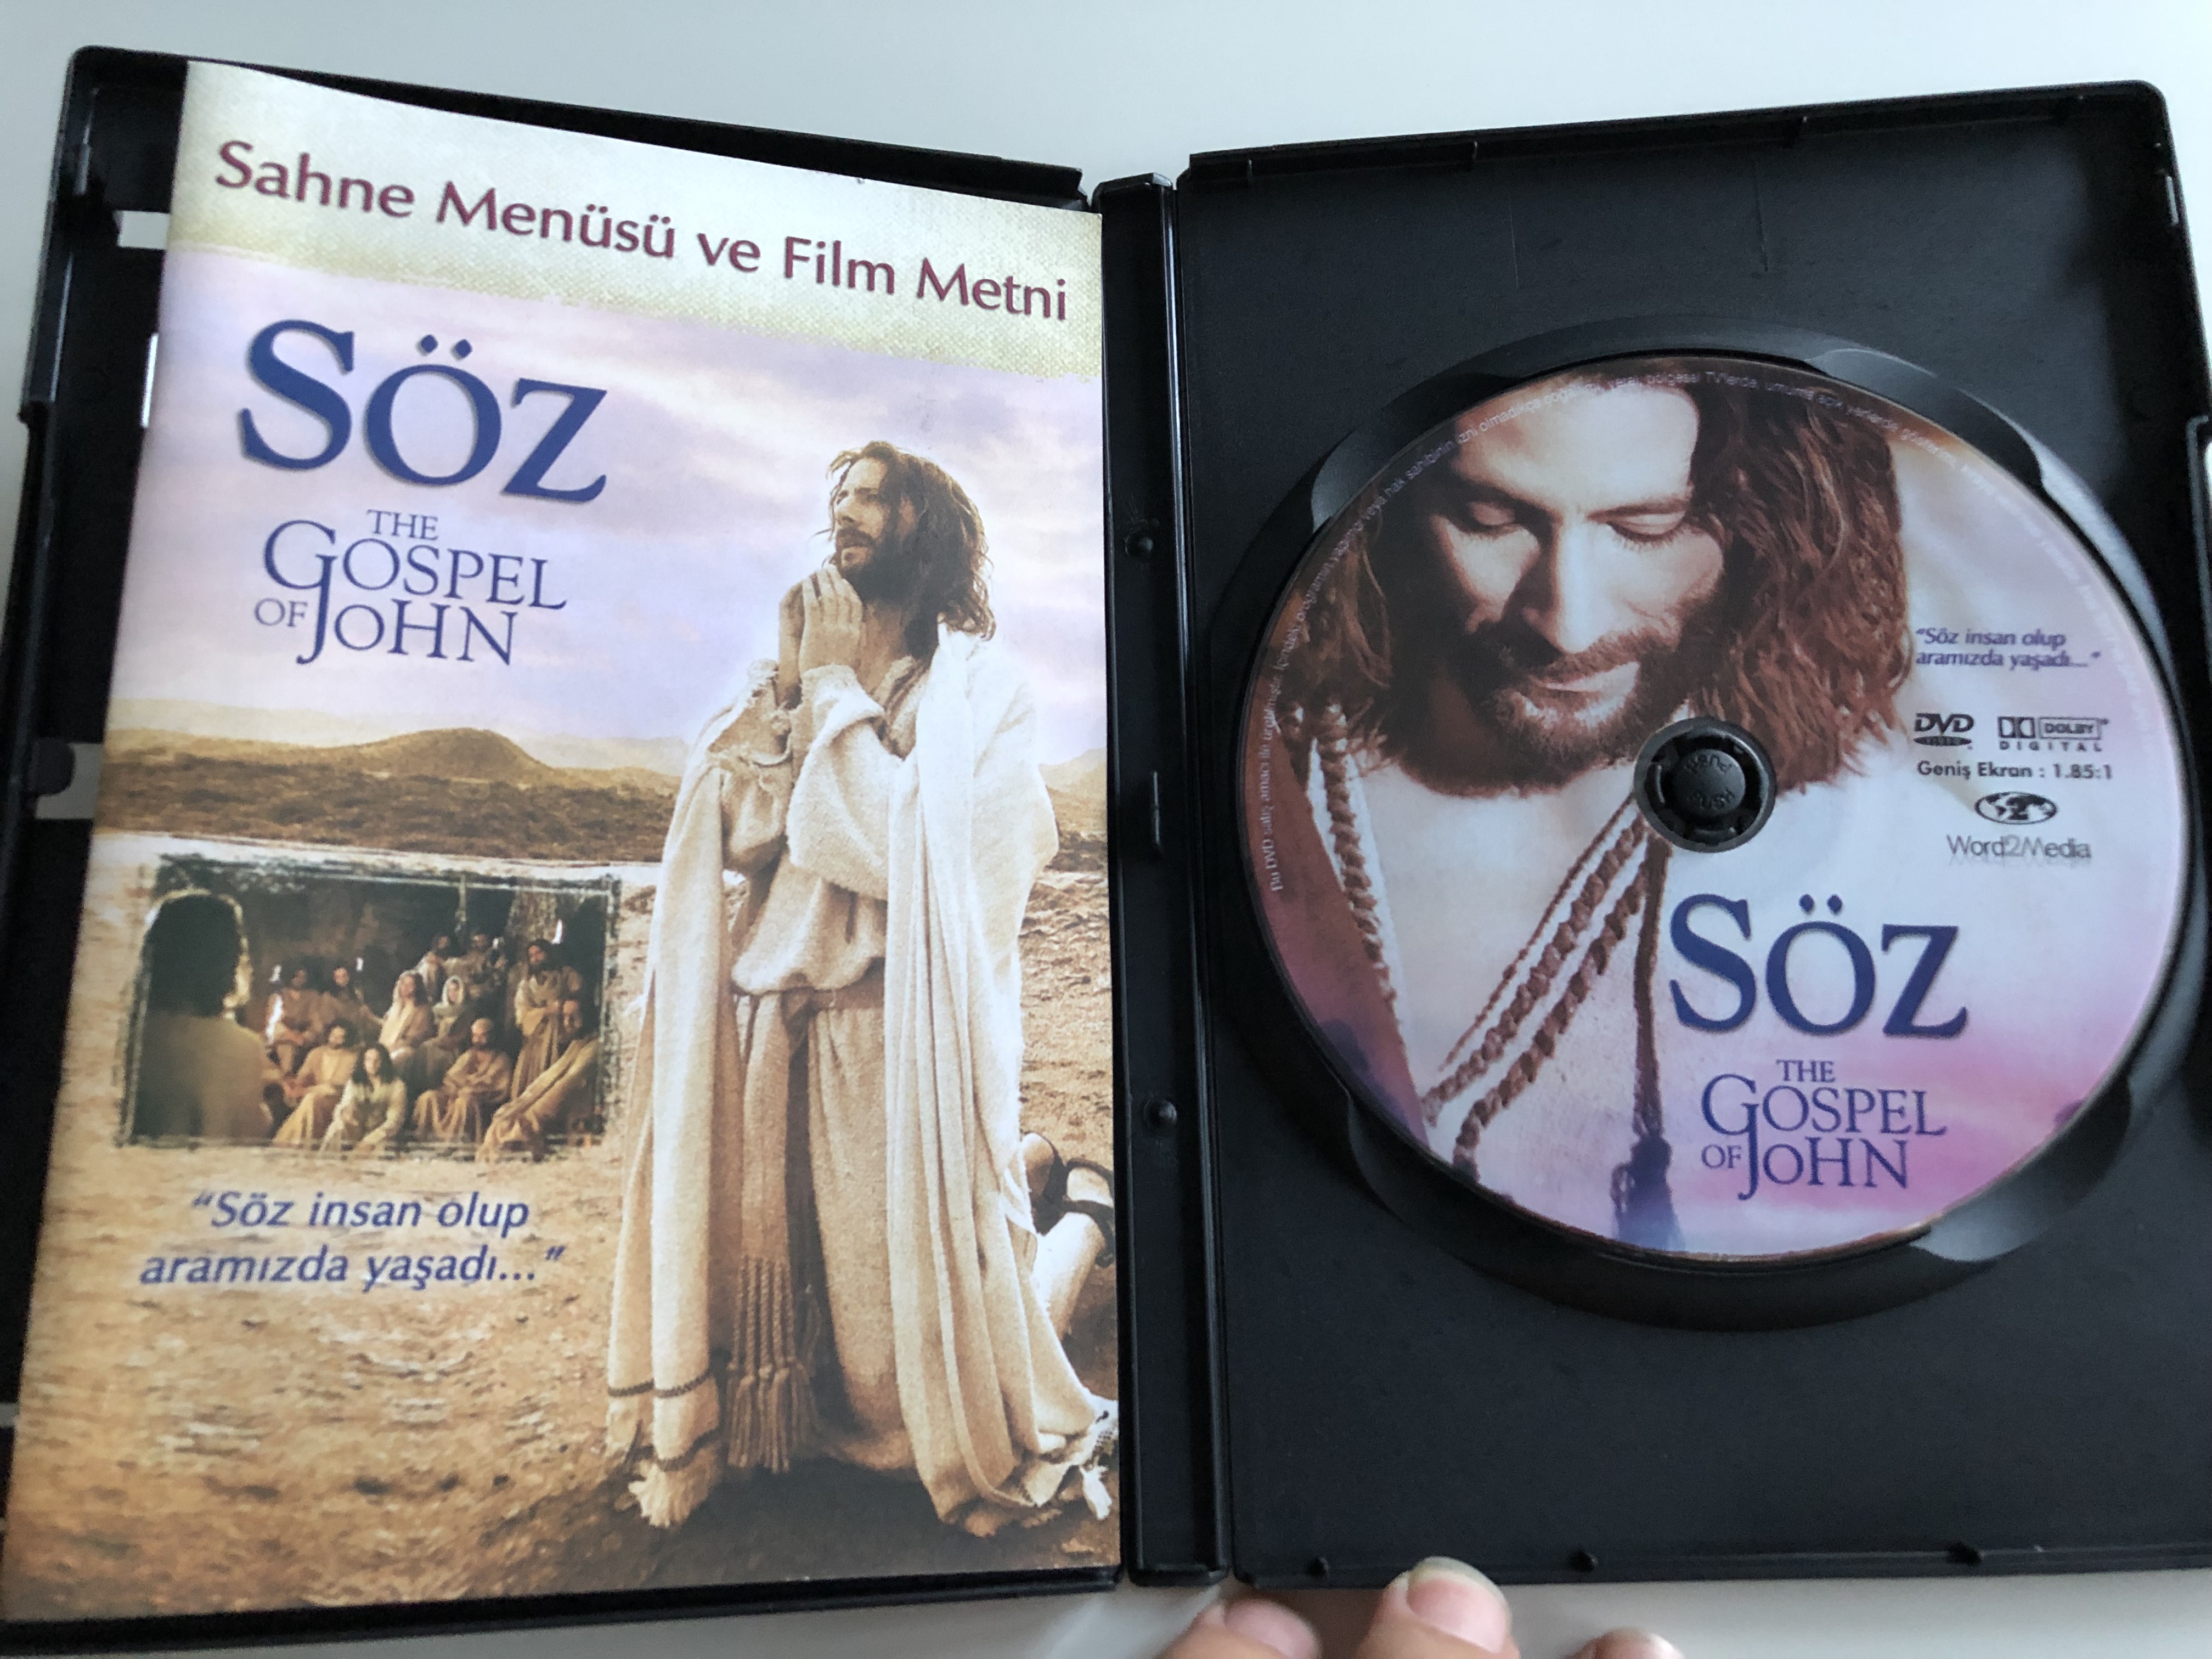 the-gospel-of-john-dvd-2003-s-z-directed-by-philip-saville-starring-henry-ian-cusick-stuart-bunce-daniel-kash-stephen-russell-3-.jpg